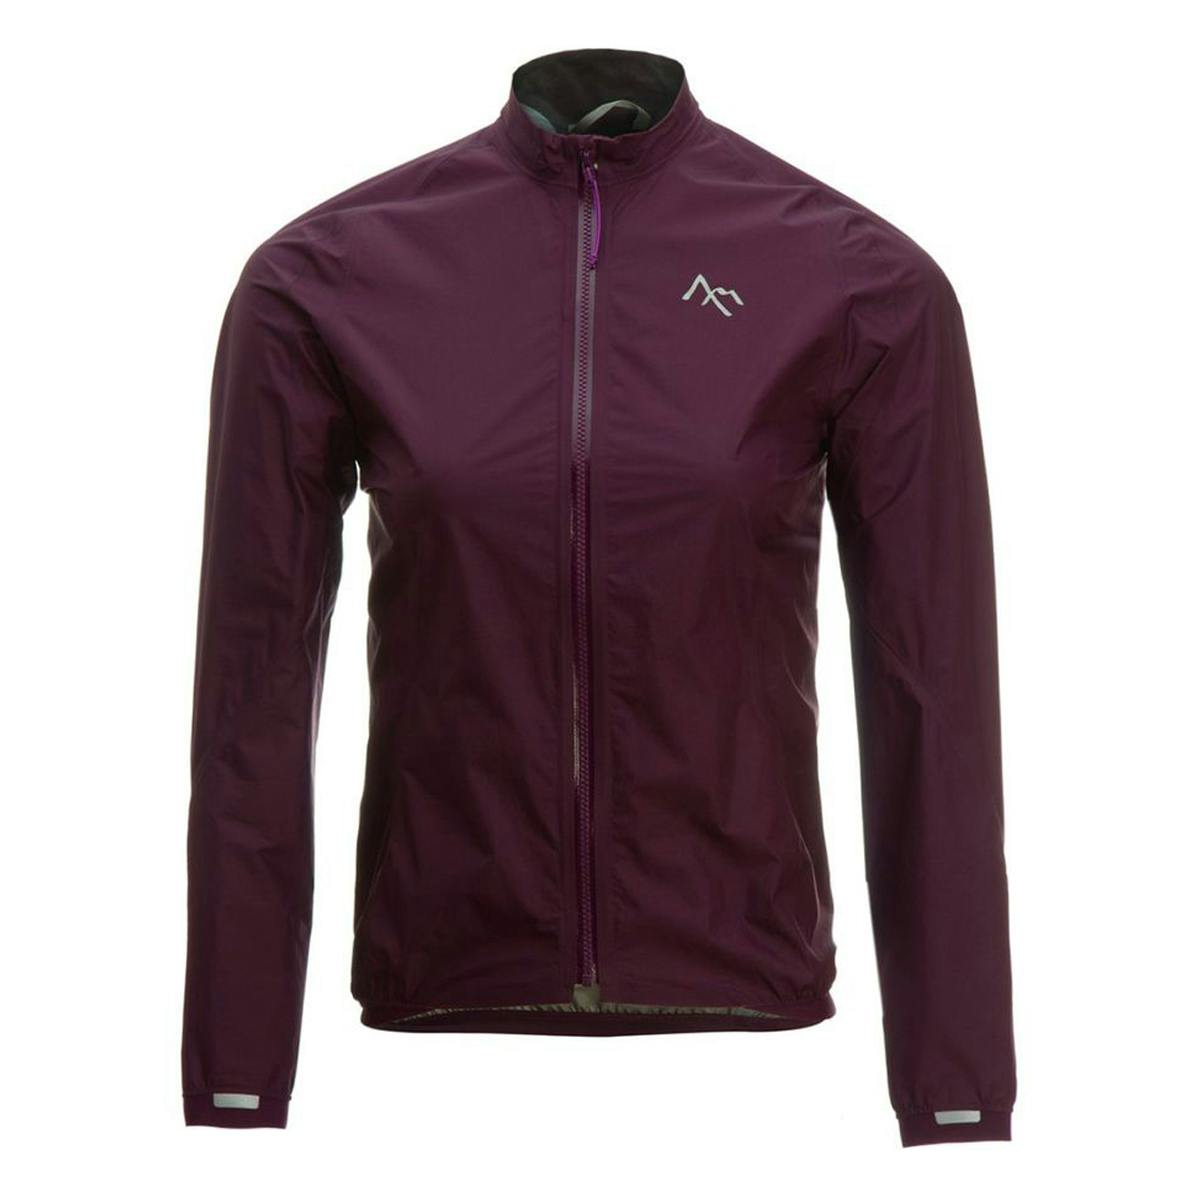 7Mesh Resistance Women's Cycling Jacket - Royal Purple - XS